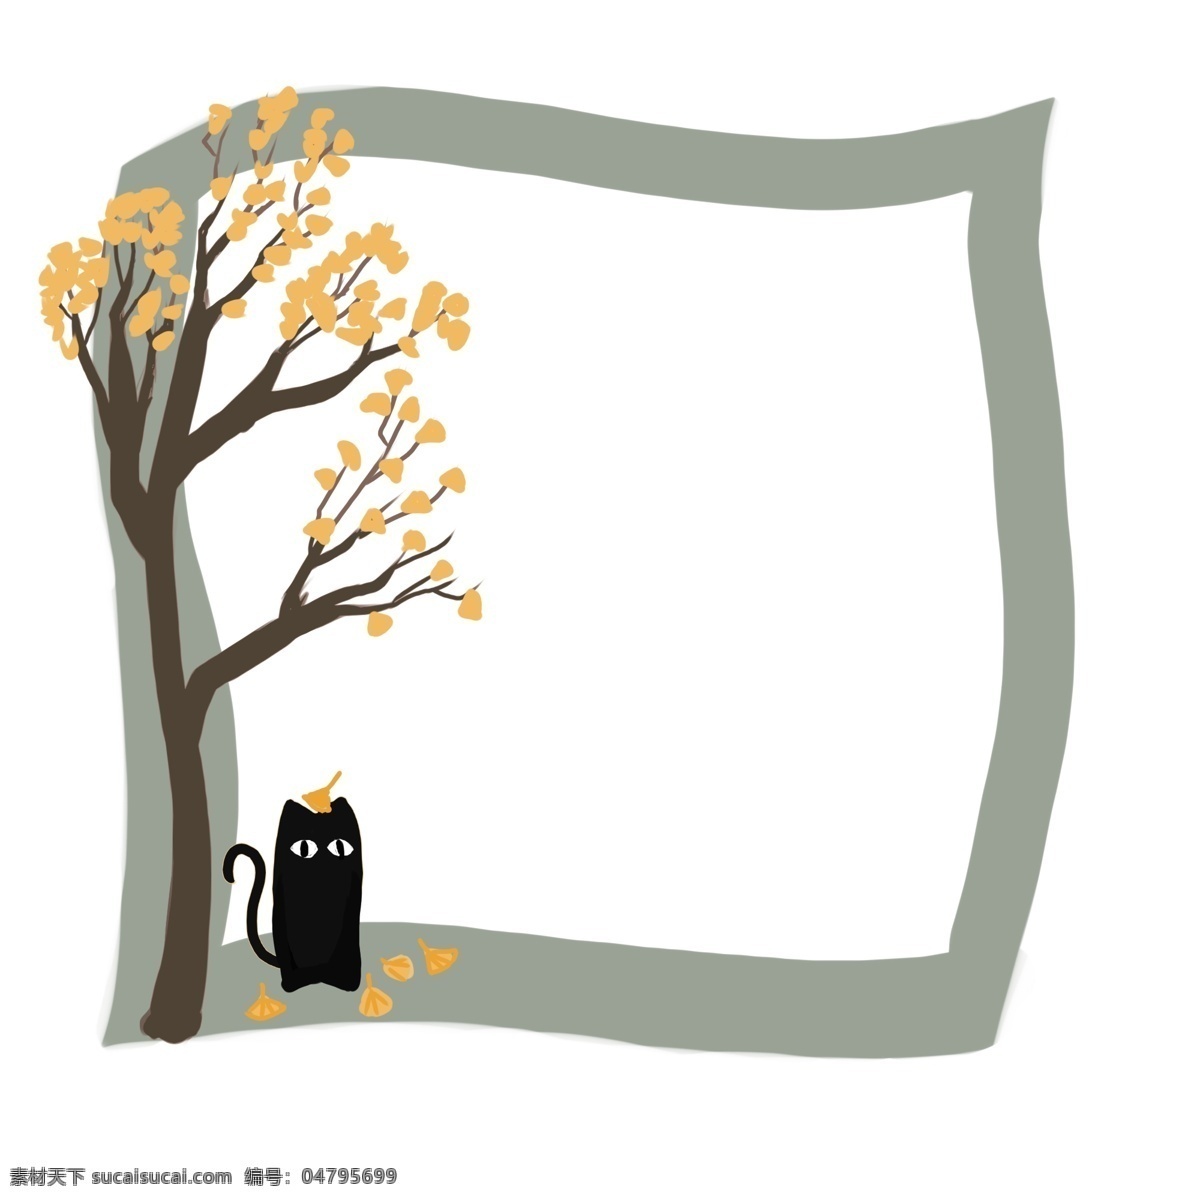 手绘 树木 边框 插画 黑色猫边框 卡通动物边框 手绘树木边框 边框插画 黄色叶子边框 灰色边框